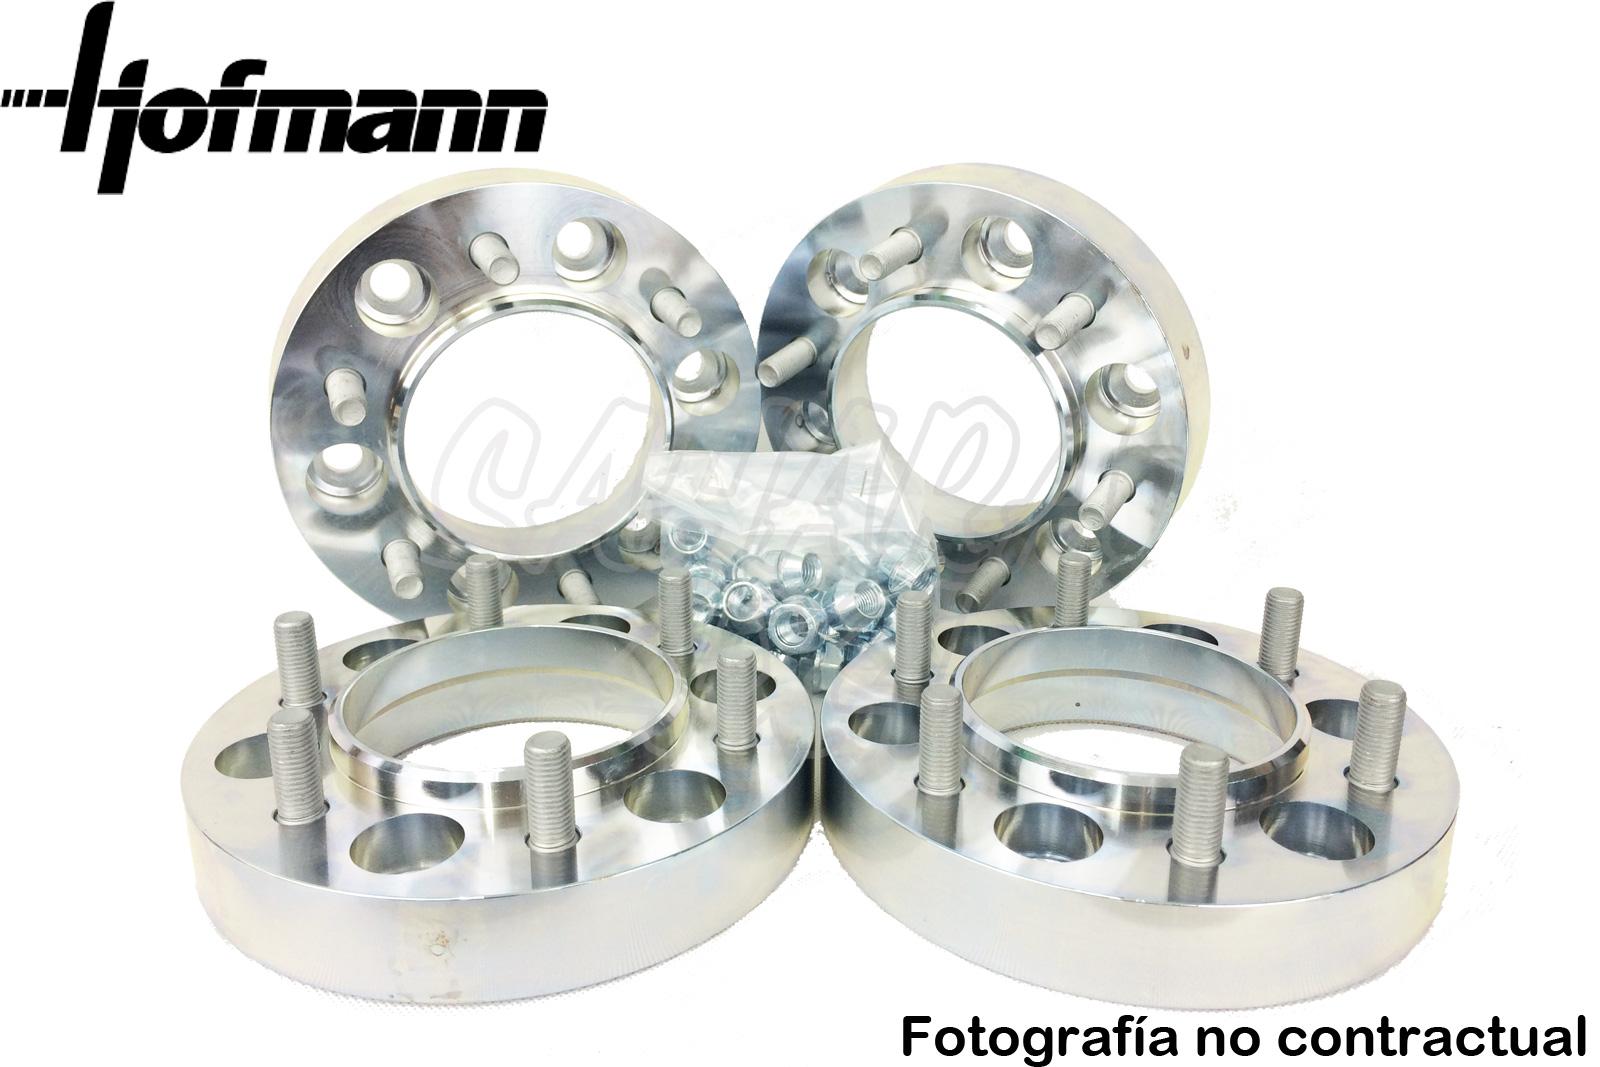 Hablar temporal coger un resfriado Separadores de rueda Hofmann en Aluminio para Land Rover Discovery III/IV